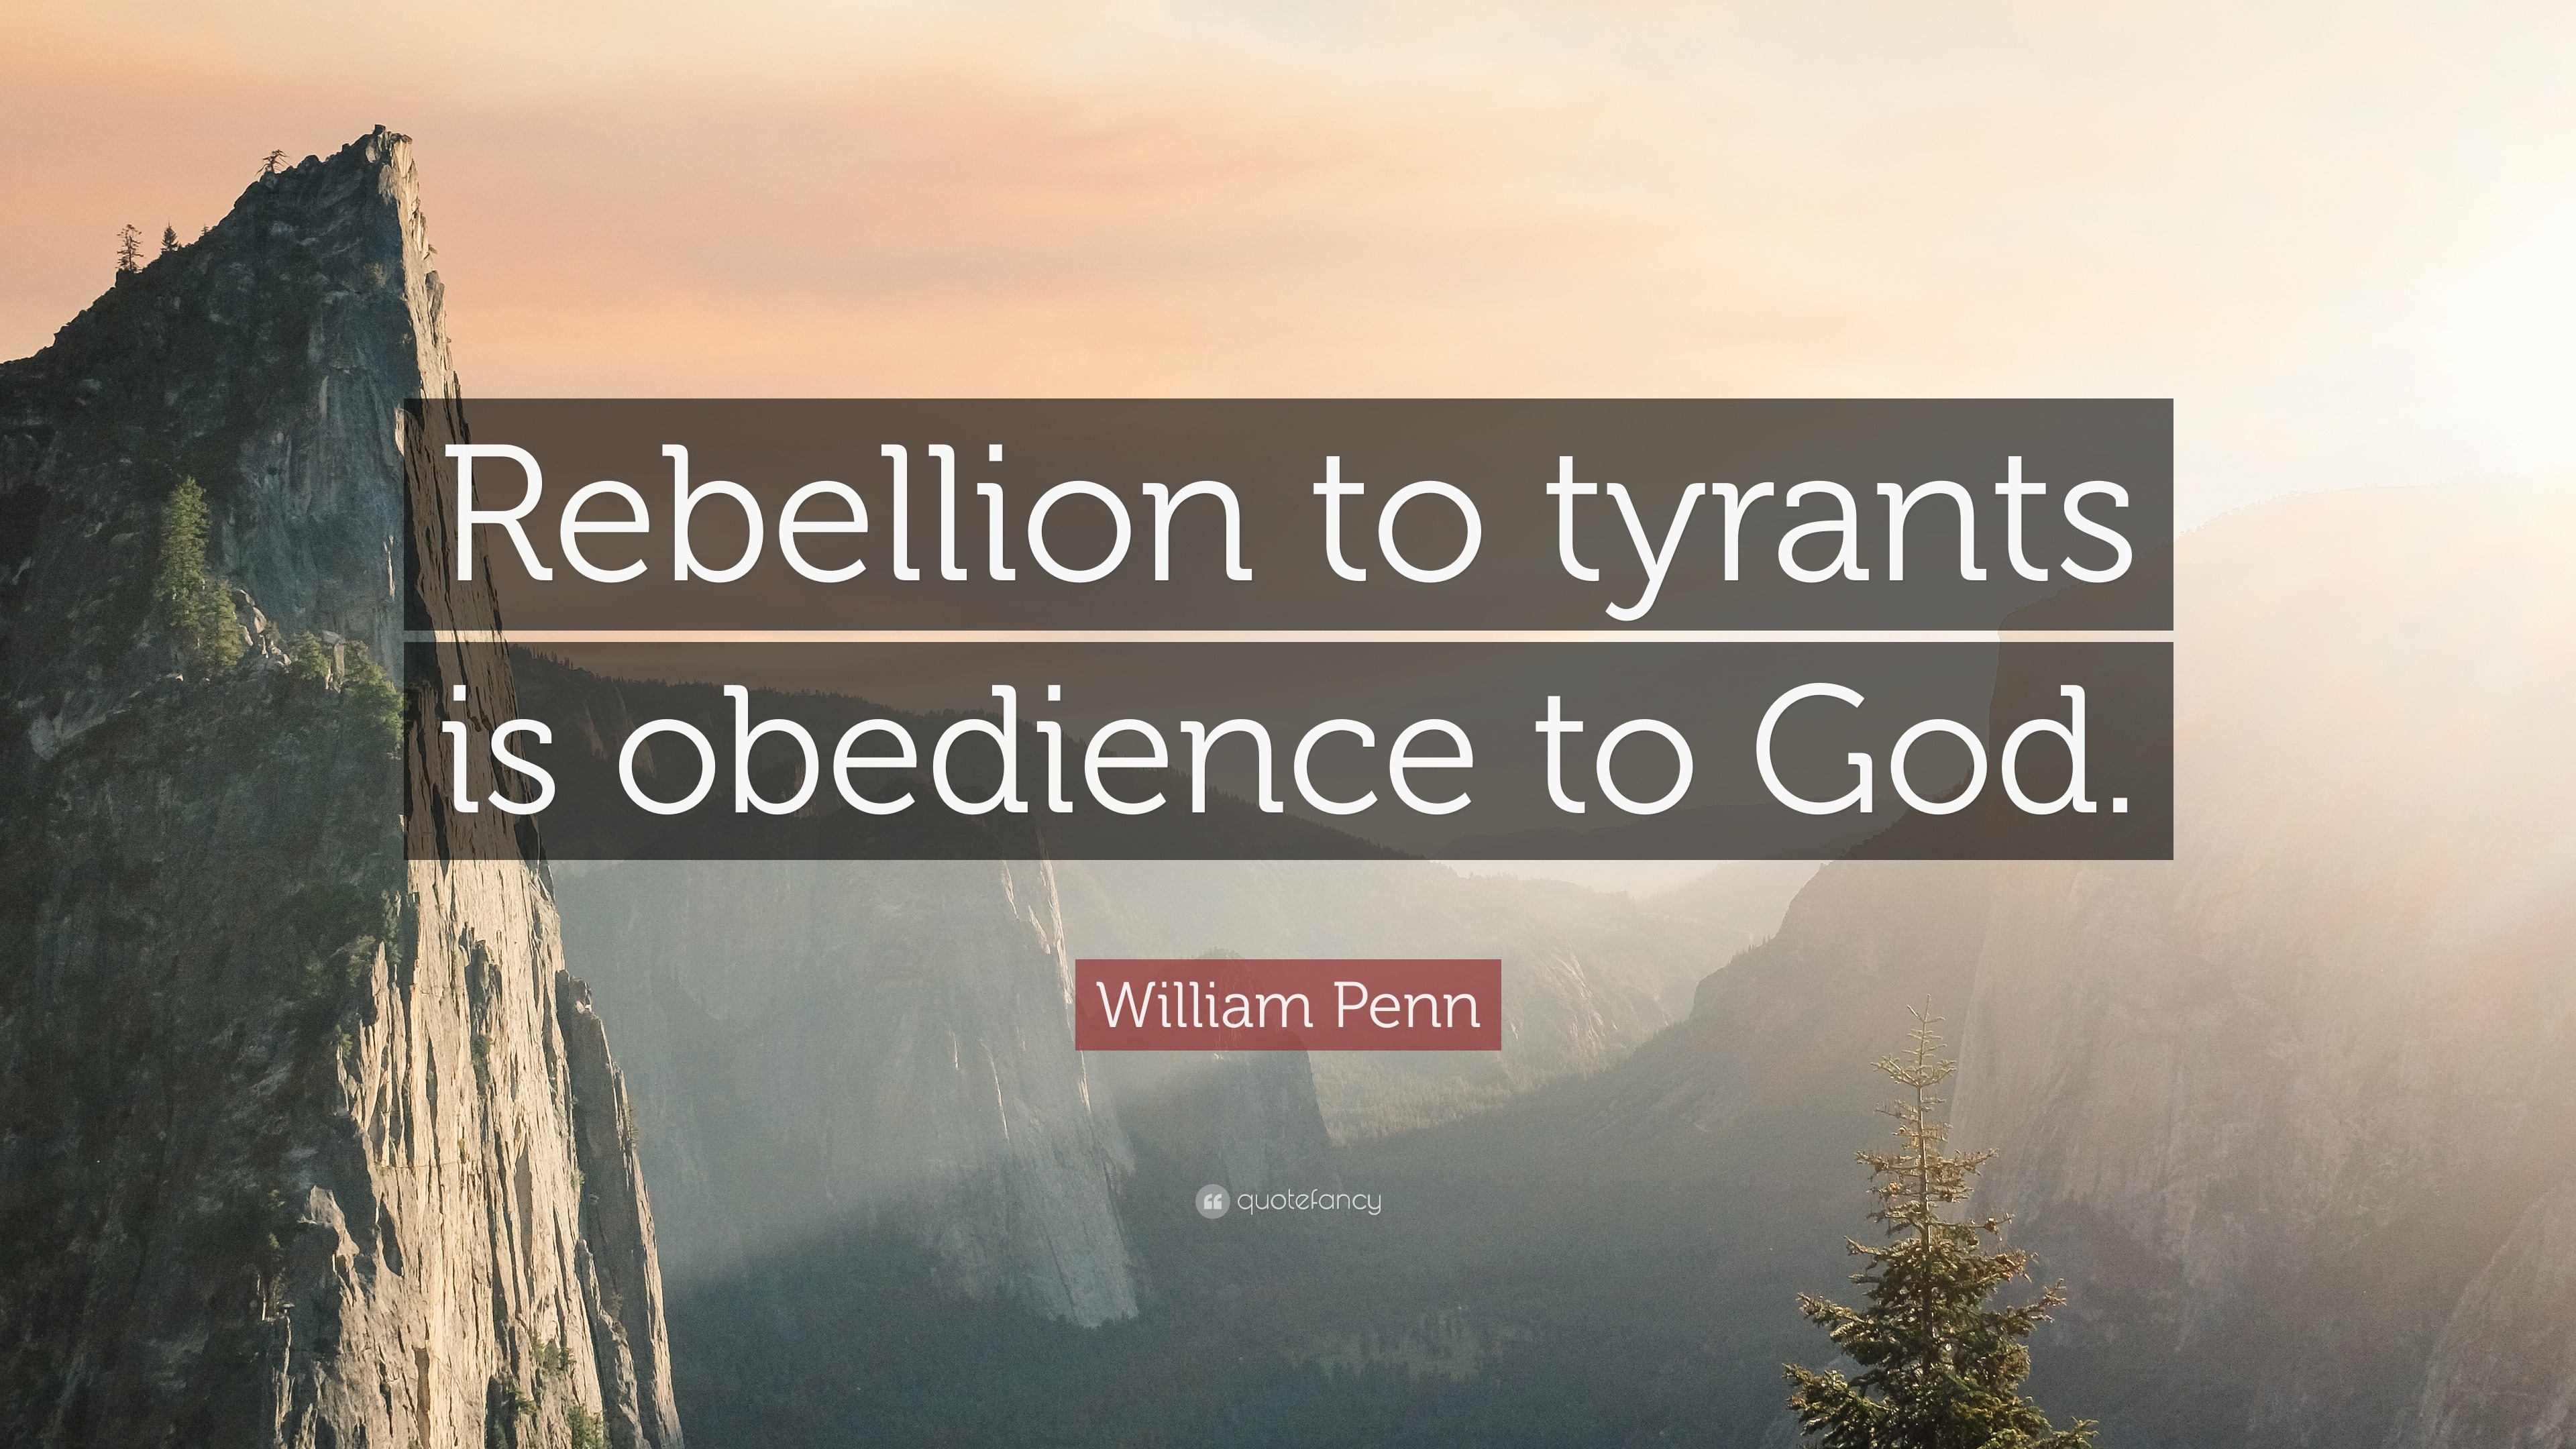 William Penn Quote: 